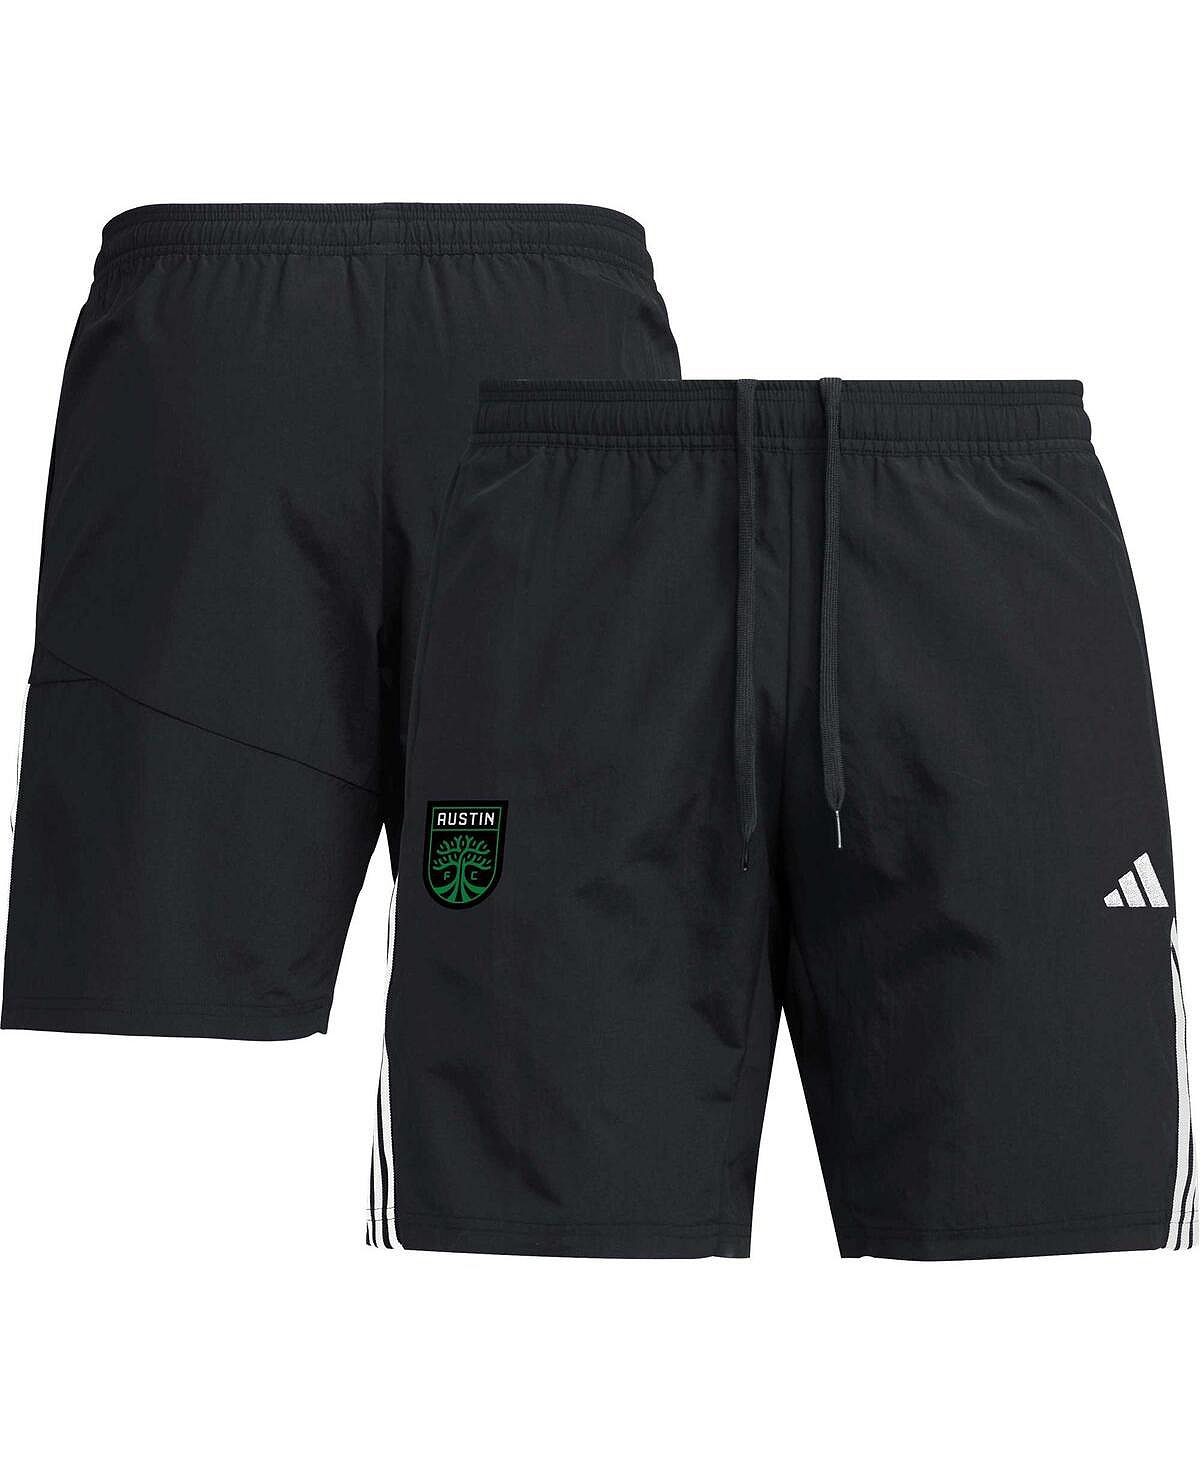 Мужские черные шорты для отдыха Austin FC adidas